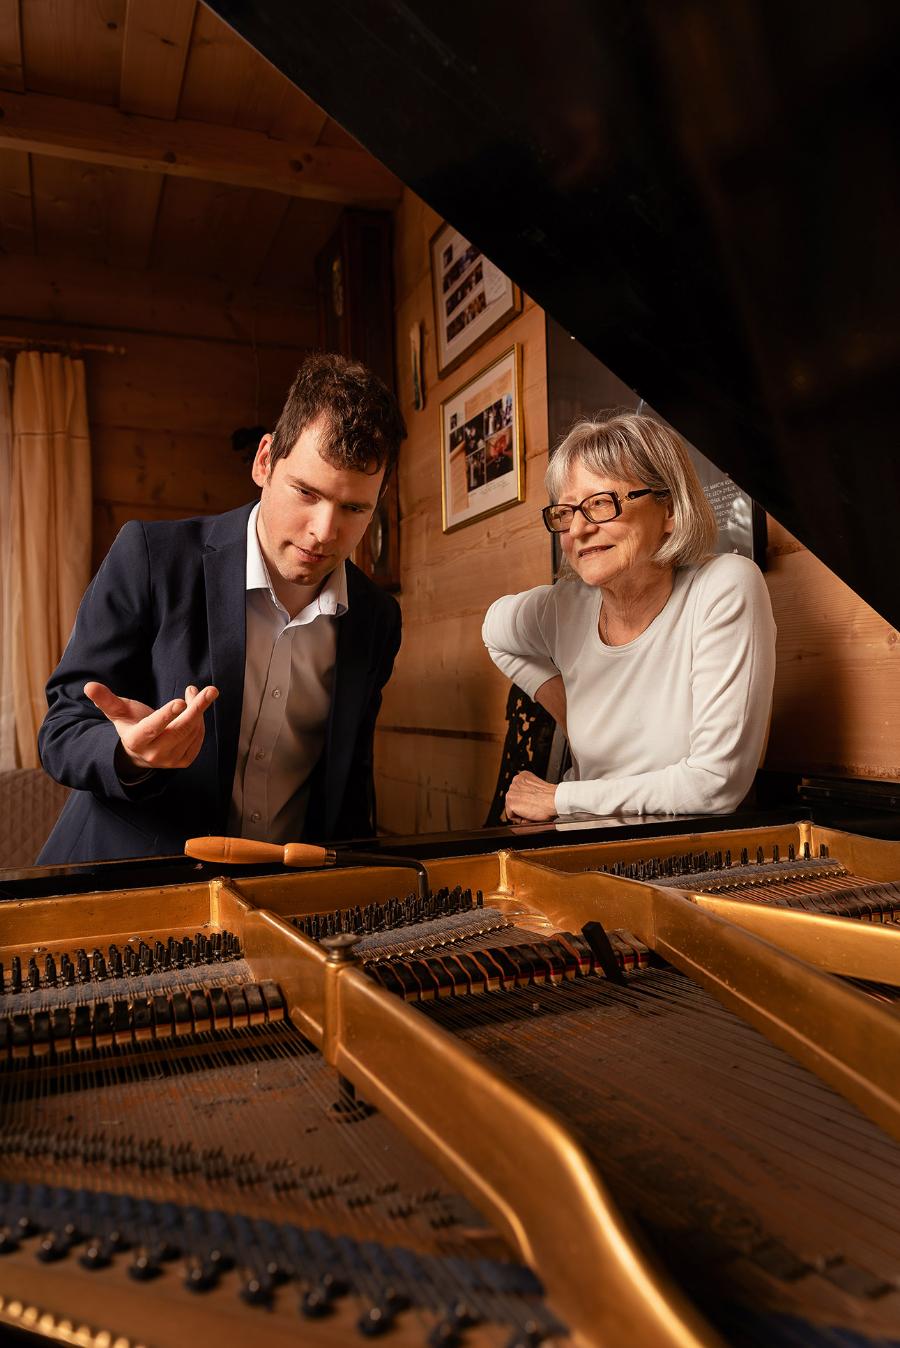 Gra na fortepianie i komponowanie muzyki to dla Grześka  najlepszy sposób na komunikowanie się ze światem. (Fot. Radek Kaźmierczak)